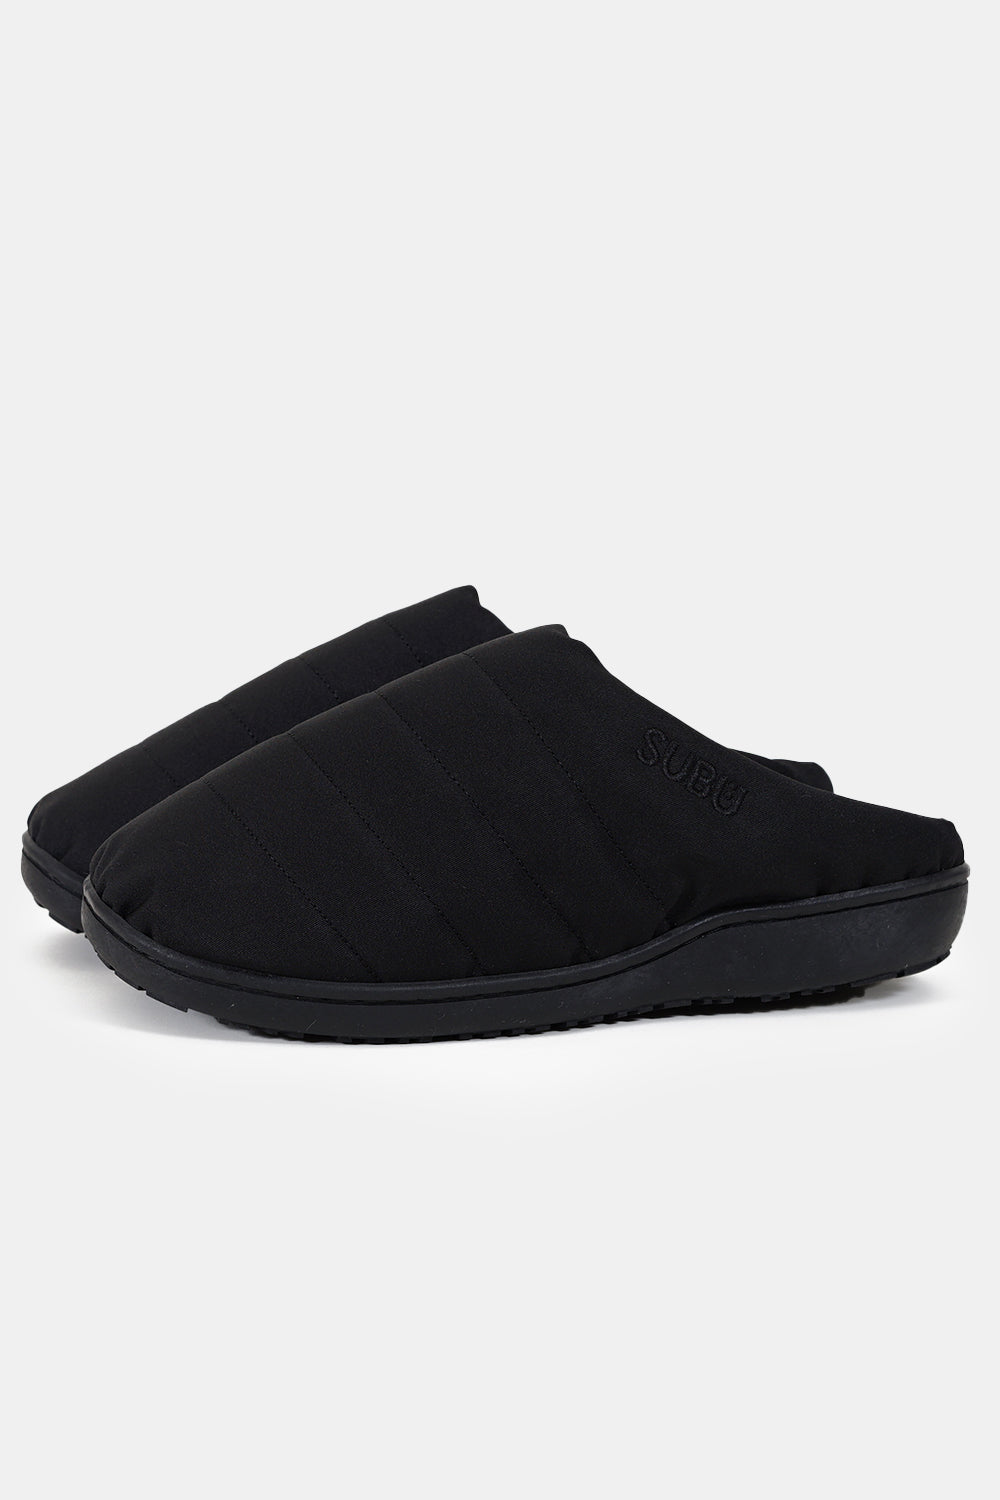 SUBU Indoor Outdoor Nannen Slippers (Black) | Number Six